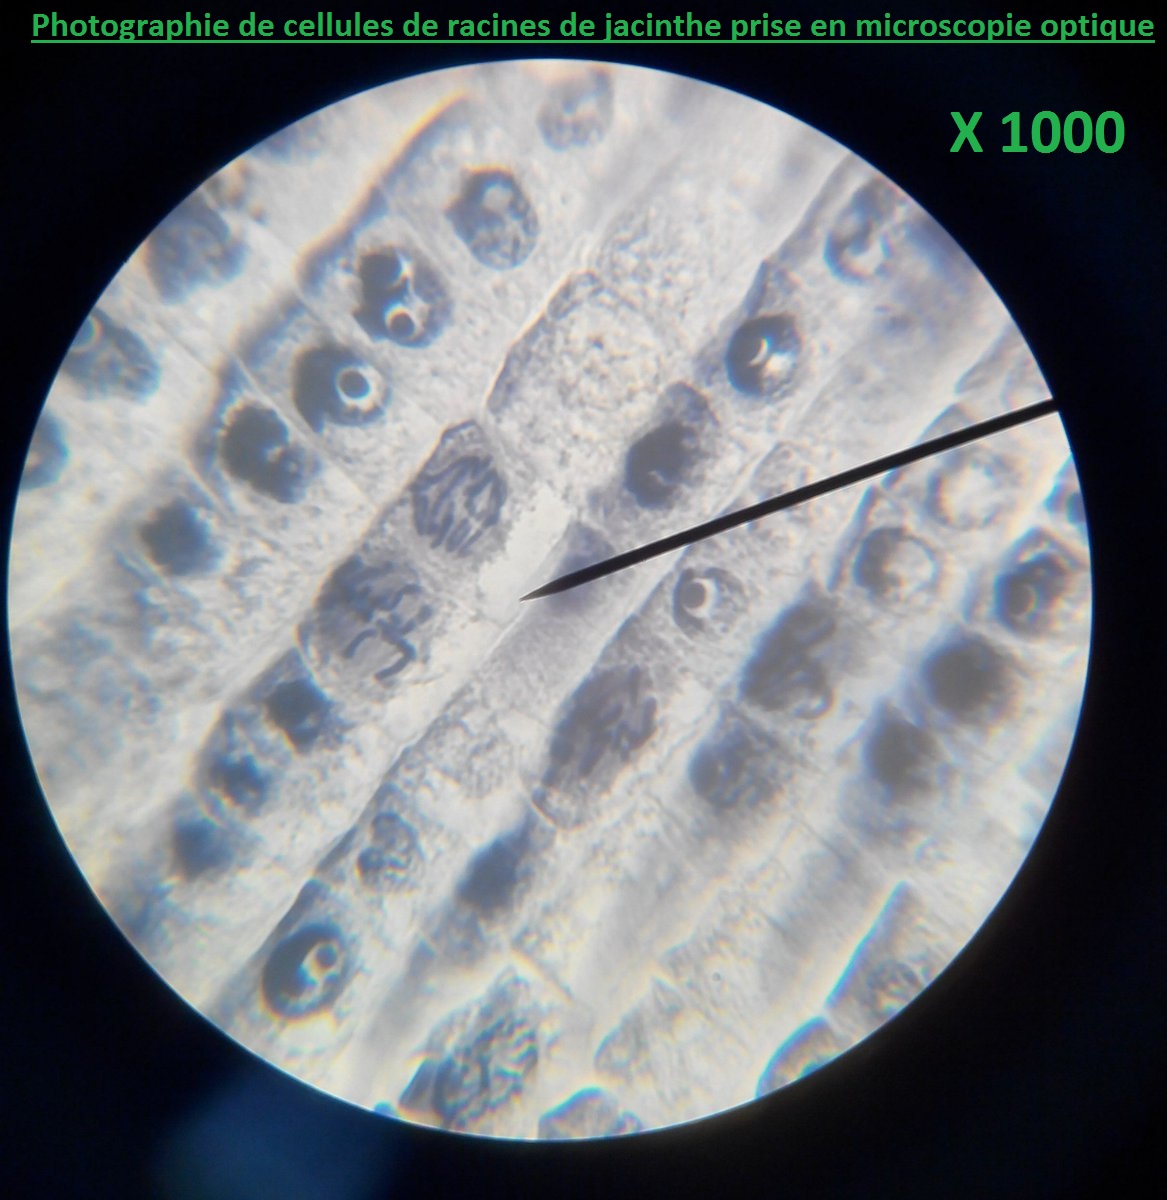 cellules de racines de jacinthes chromosomes SVT mitose microscope